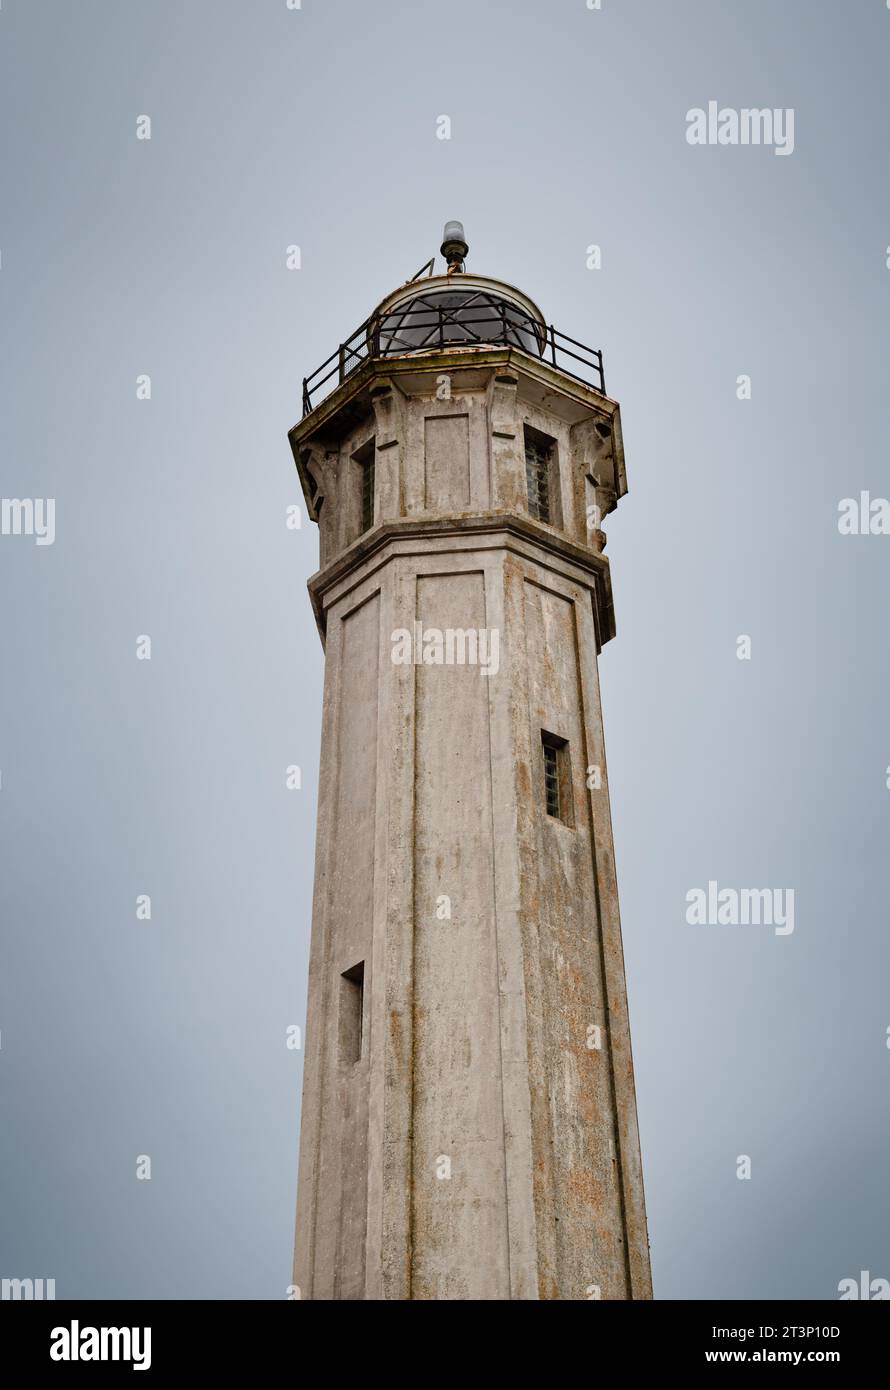 The lighthouse on Alcatraz Island against a gray sky Stock Photo